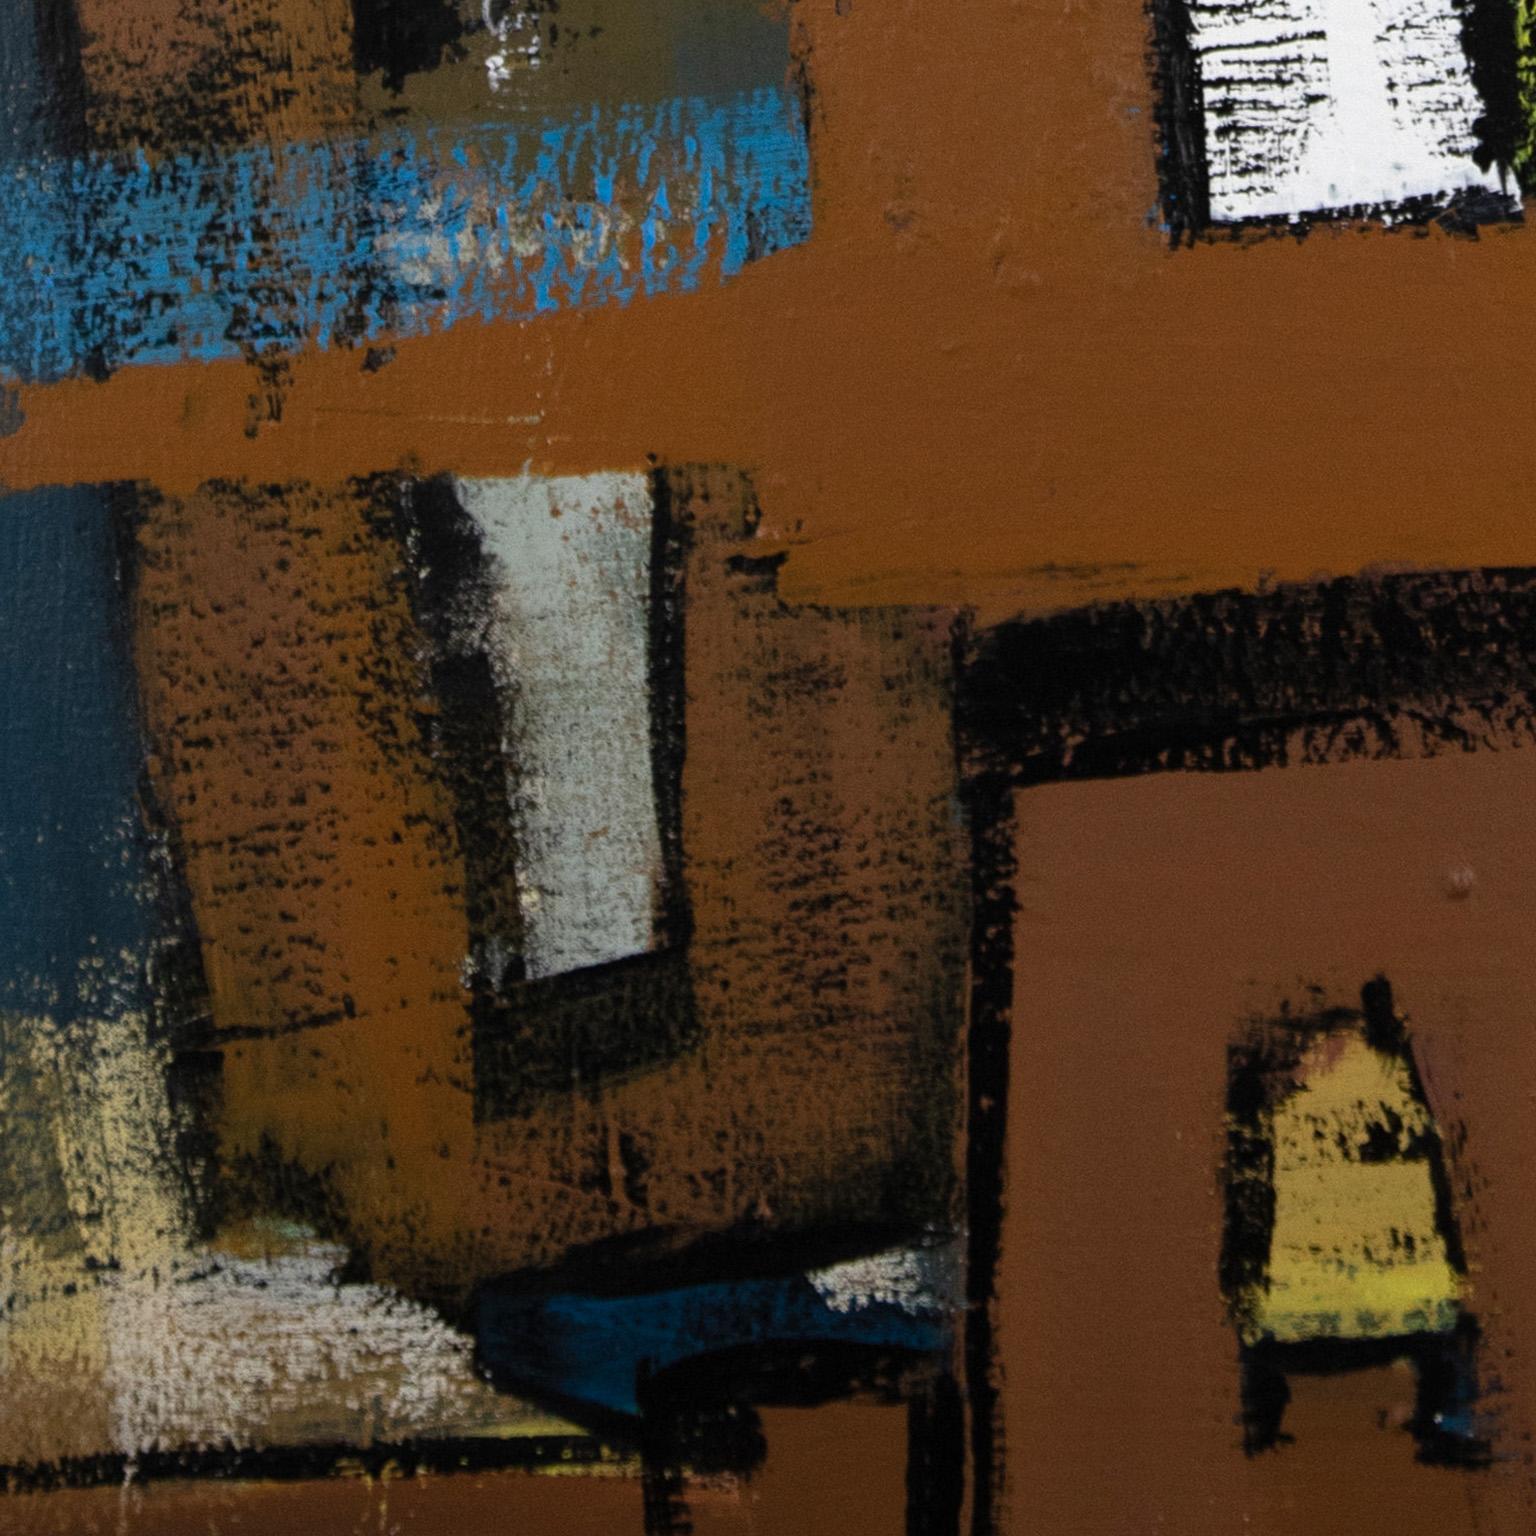 Building Babylon de Parris Jaru est une peinture à l'huile de 48 x 36 pouces. Les couleurs principales sont le bleu, le jaune et le marron. La surface est définie par un épais empâtement de peinture, réalisé avec des pigments d'origine végétale que